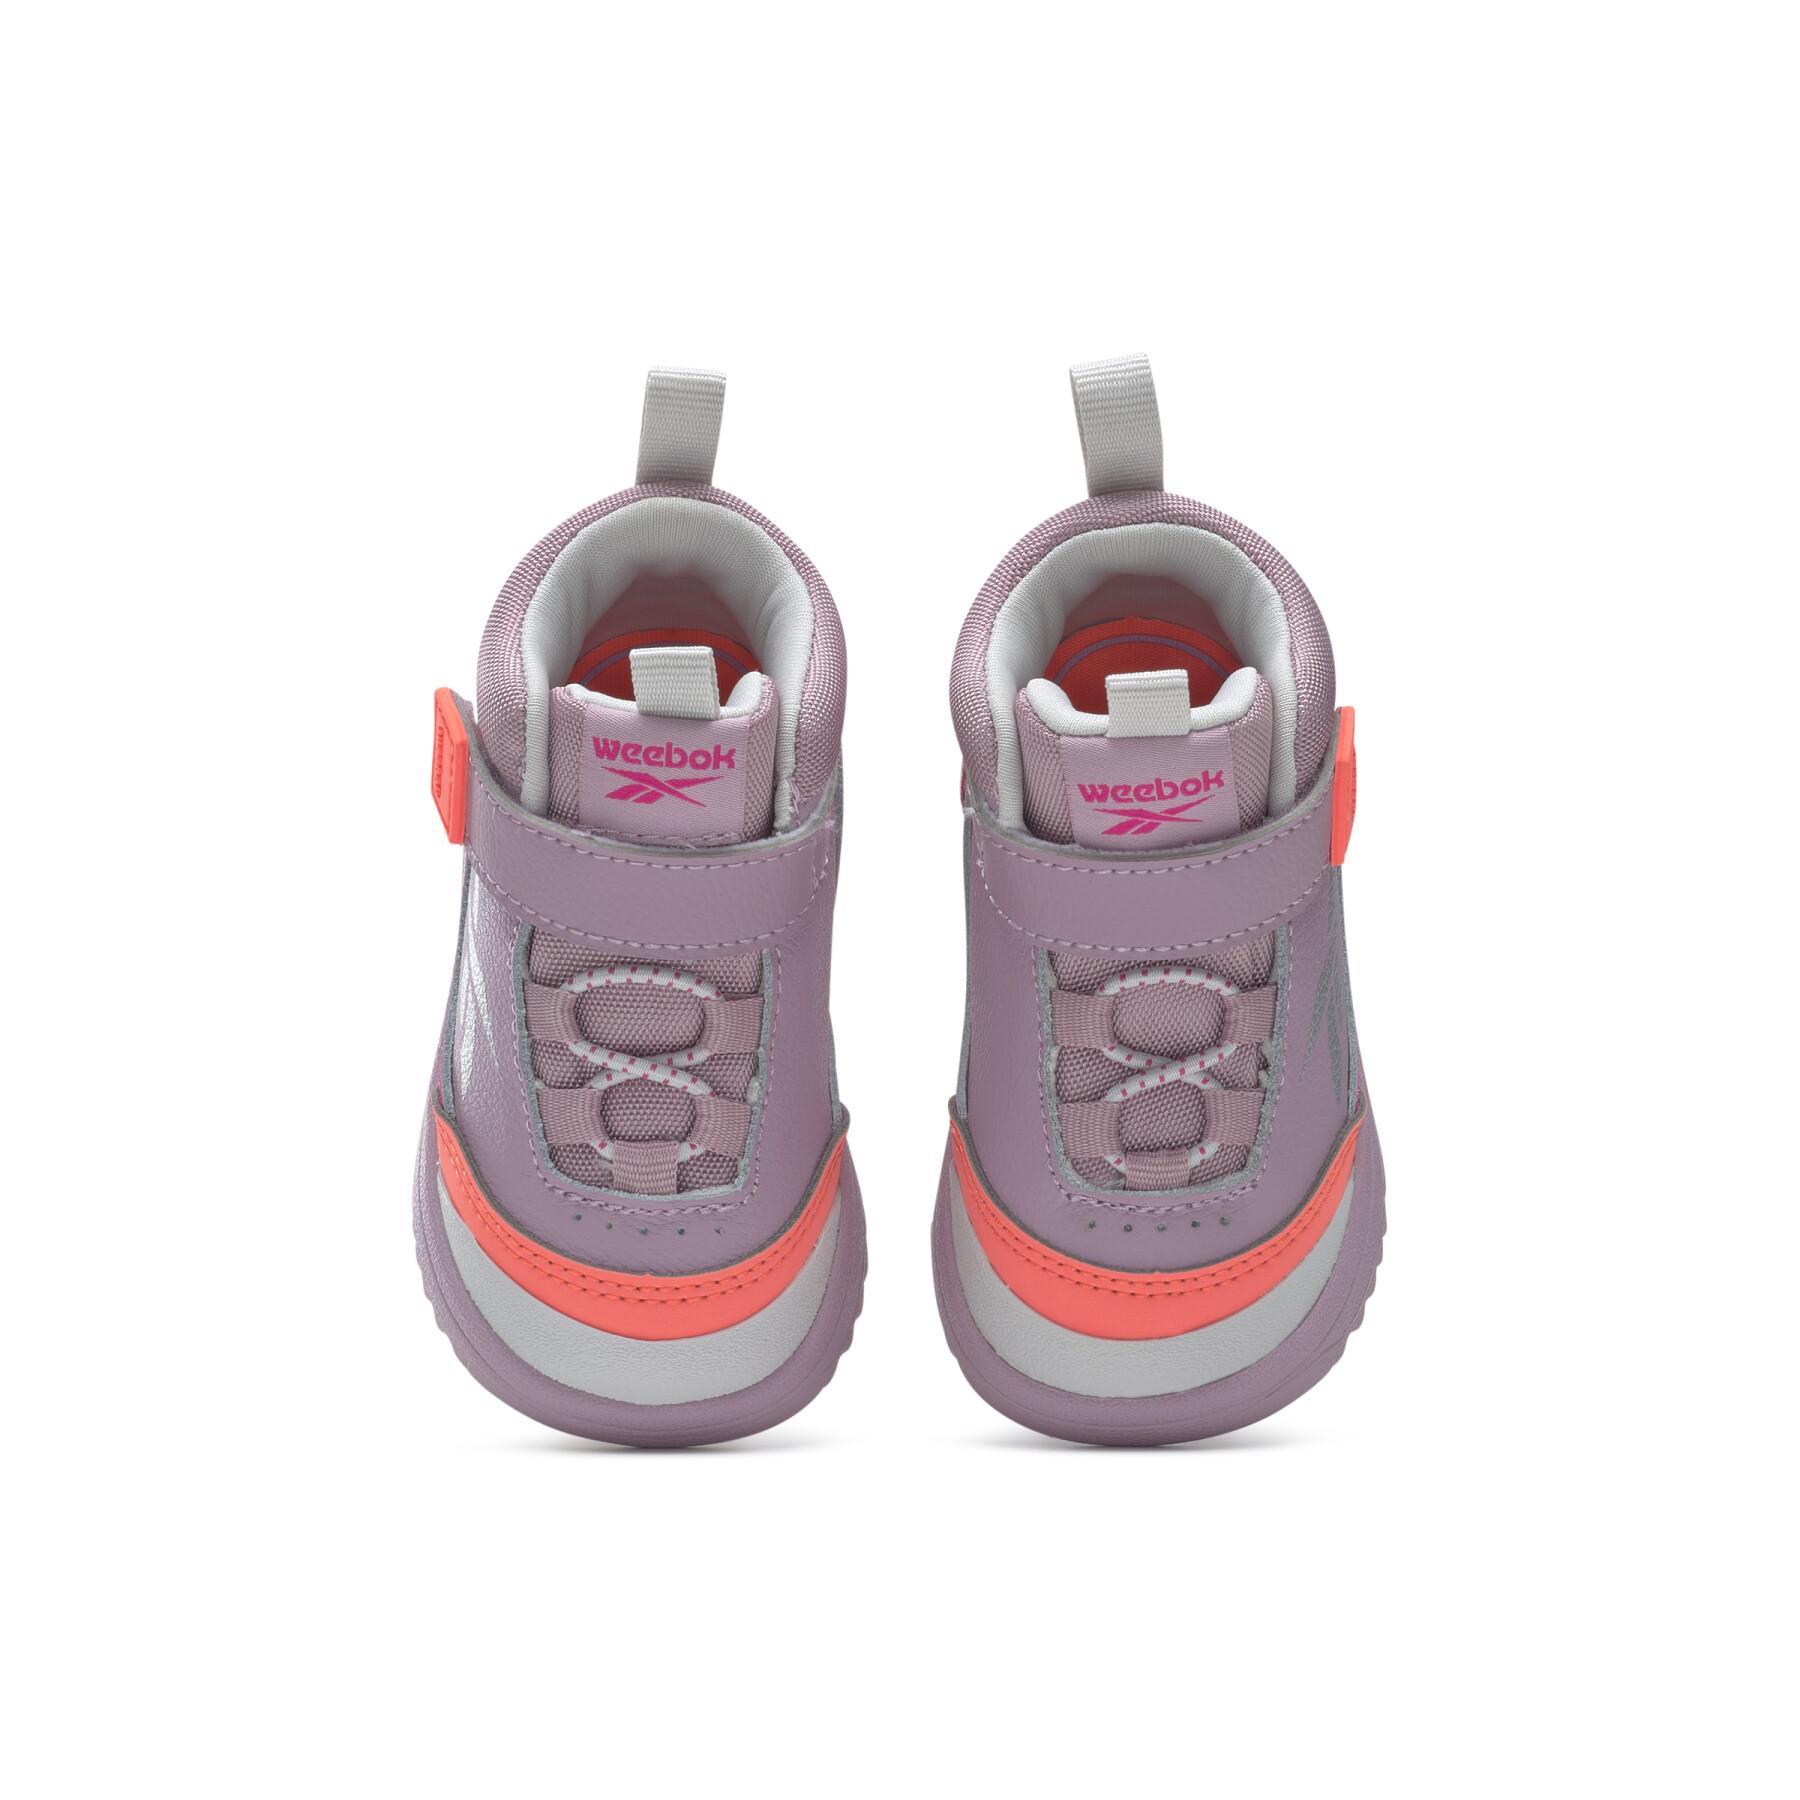 Children's sneakers Reebok Weebok Storm X